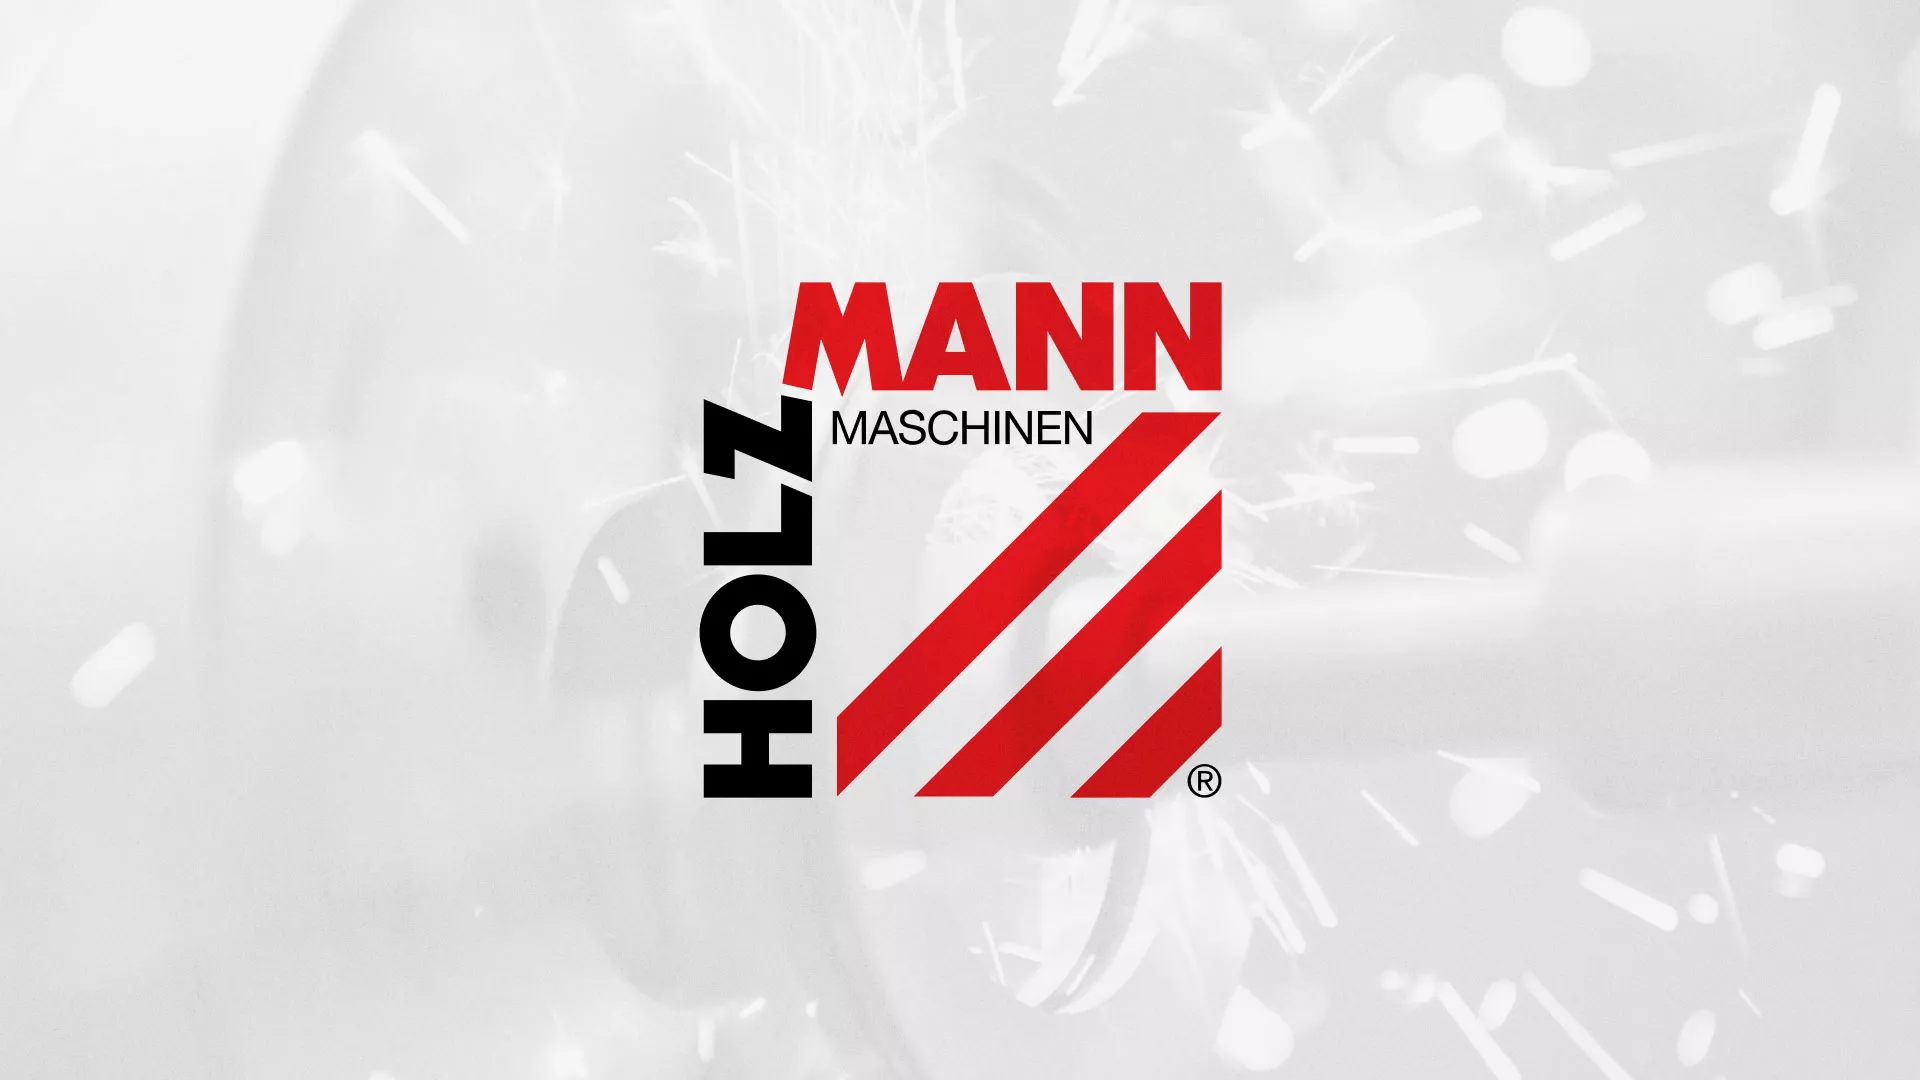 Создание сайта компании «HOLZMANN Maschinen GmbH» в Галиче